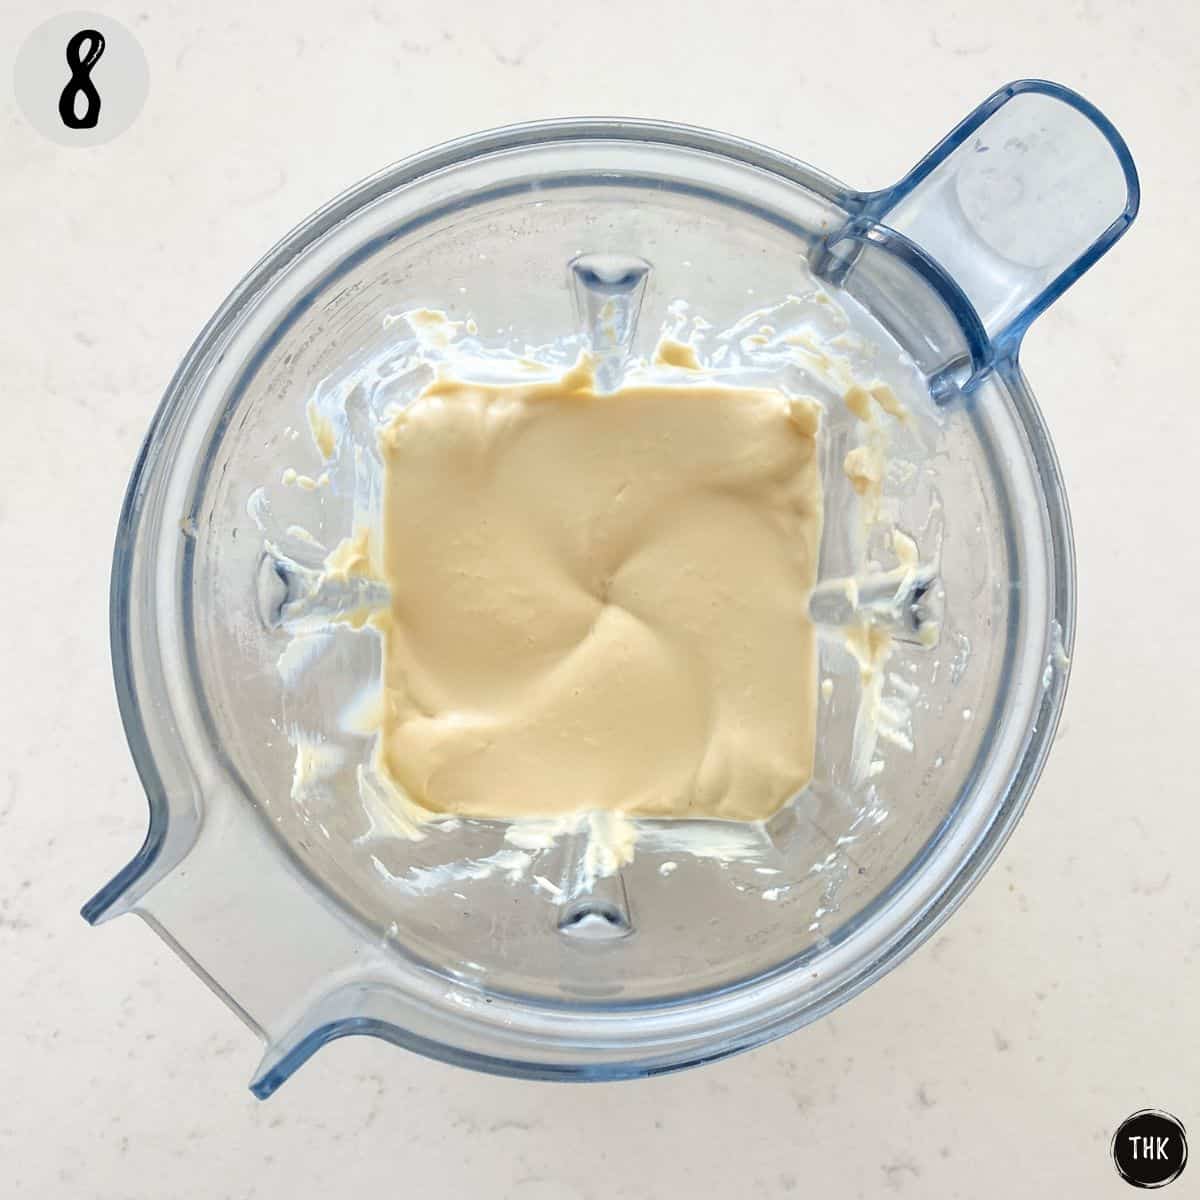 Vegan cream cheese frosting inside blender.